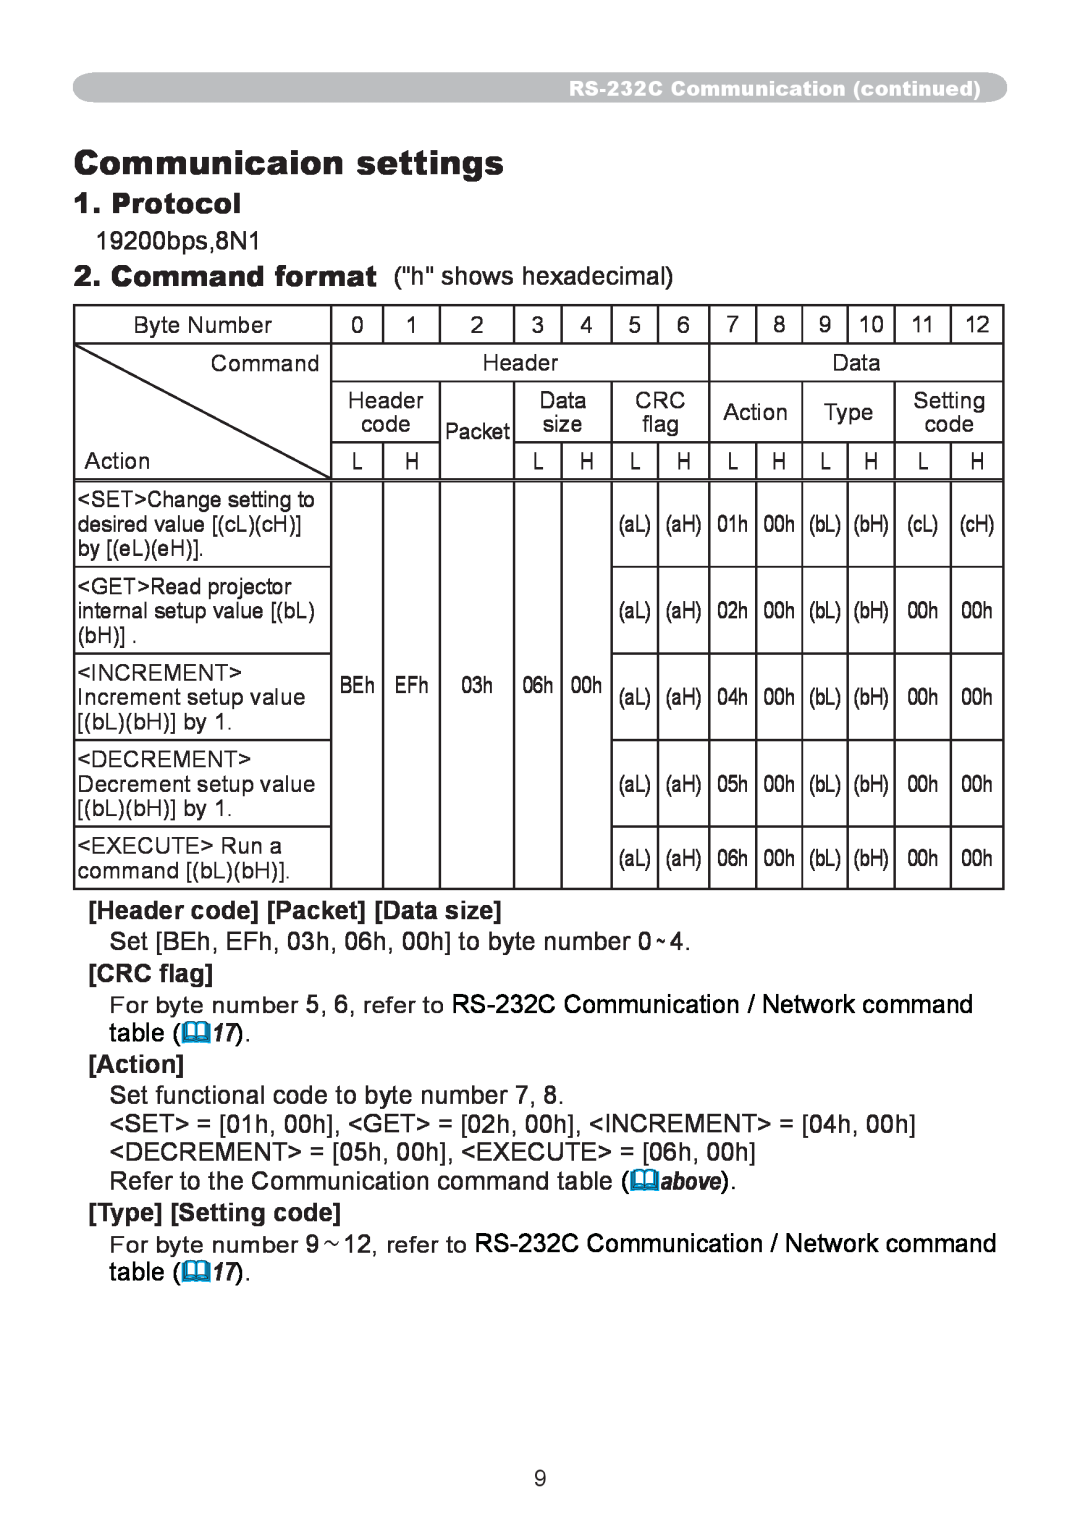 CP TECHNOLOGIES CP-A300N, CP-A220N manual Communicaion settings, Protocol 